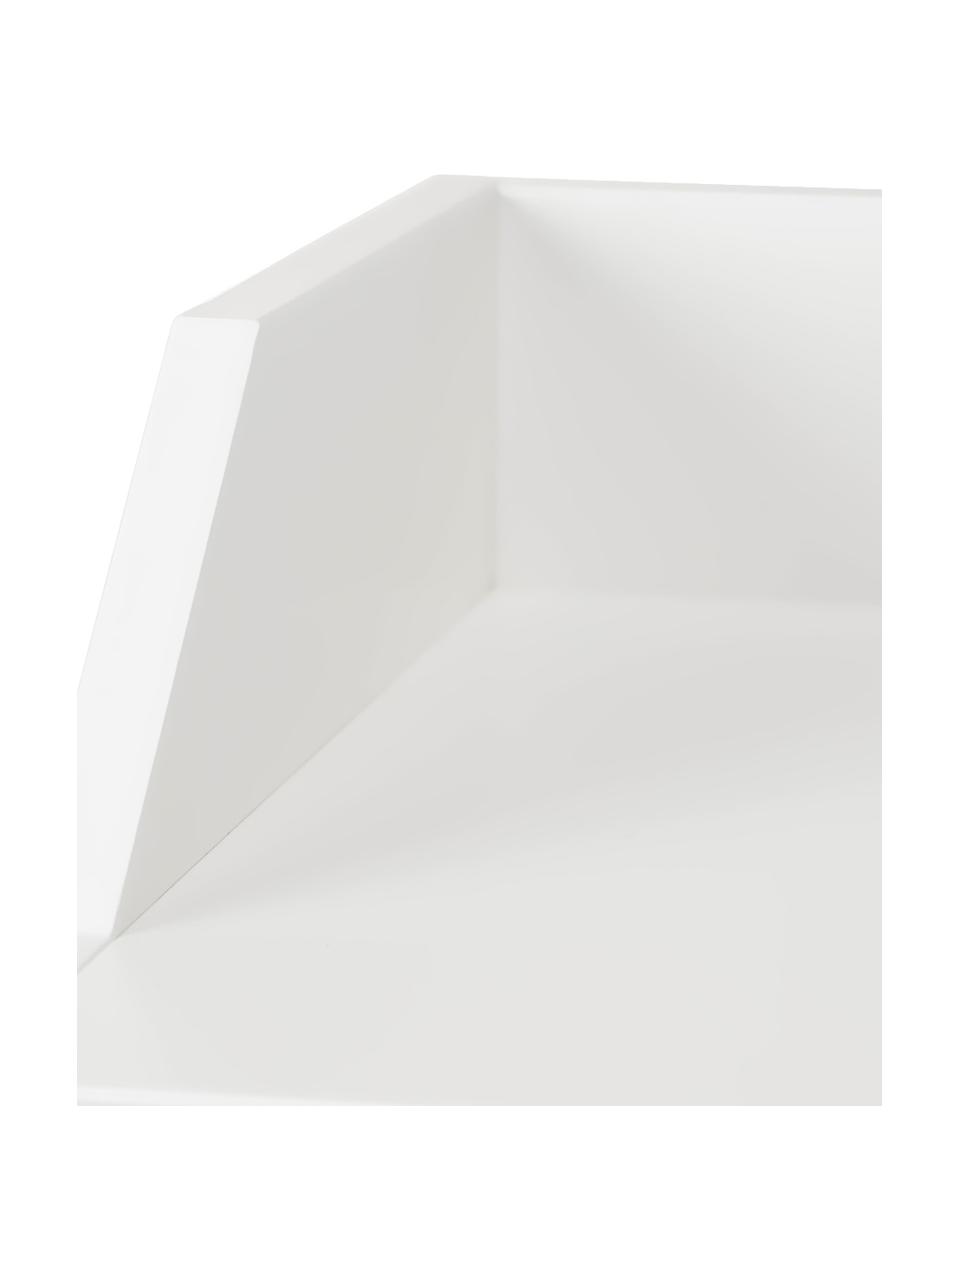 Wickelschrank Harlequin, Korpus: Mitteldichte Holzfaserpla, Front: Plexiglas, Griffe: Messing, Weiß, B 84 x H 100 cm